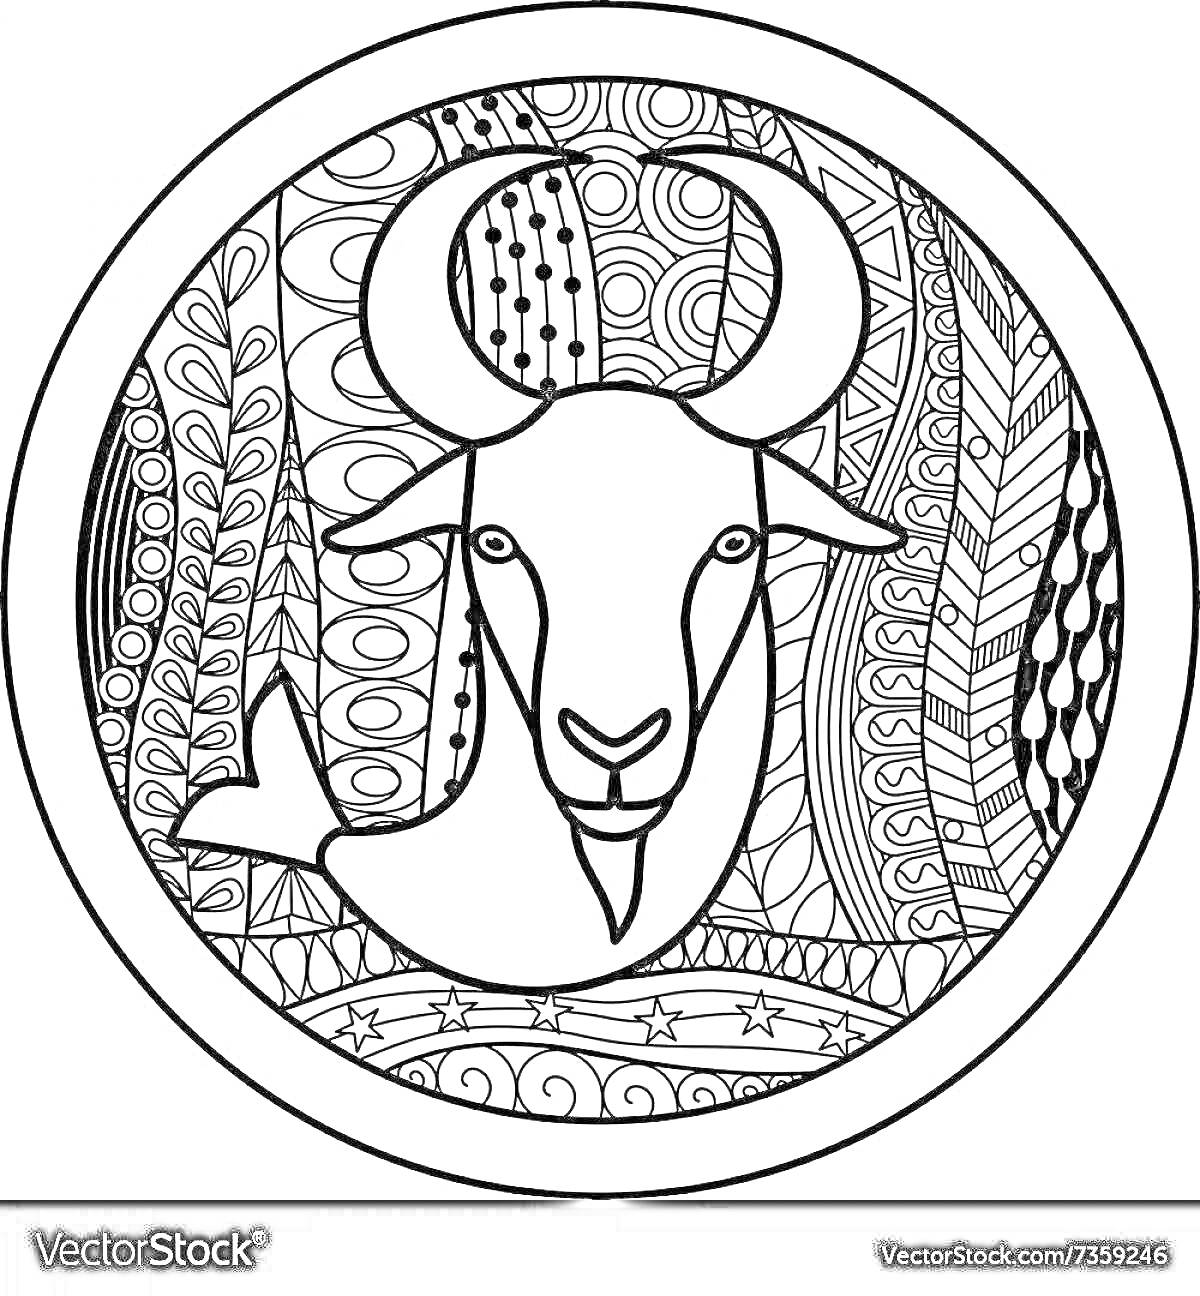 Раскраска Козерог, зодиакальный знак с рогами, в окружении абстрактных узоров, круглый контур